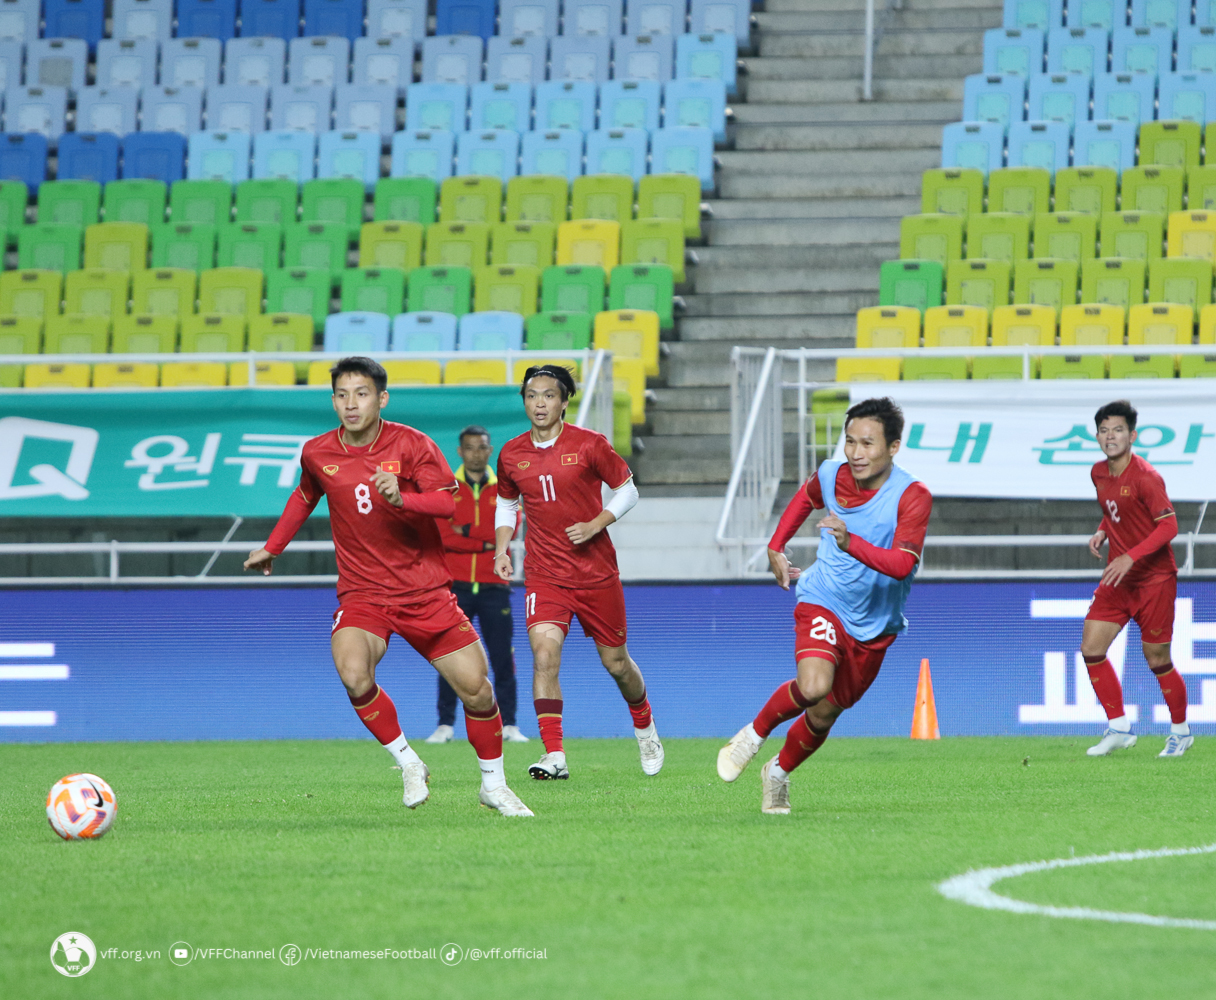 Nỗi lo của đội tuyển Việt Nam khi gặp Hàn Quốc - Ảnh 2.